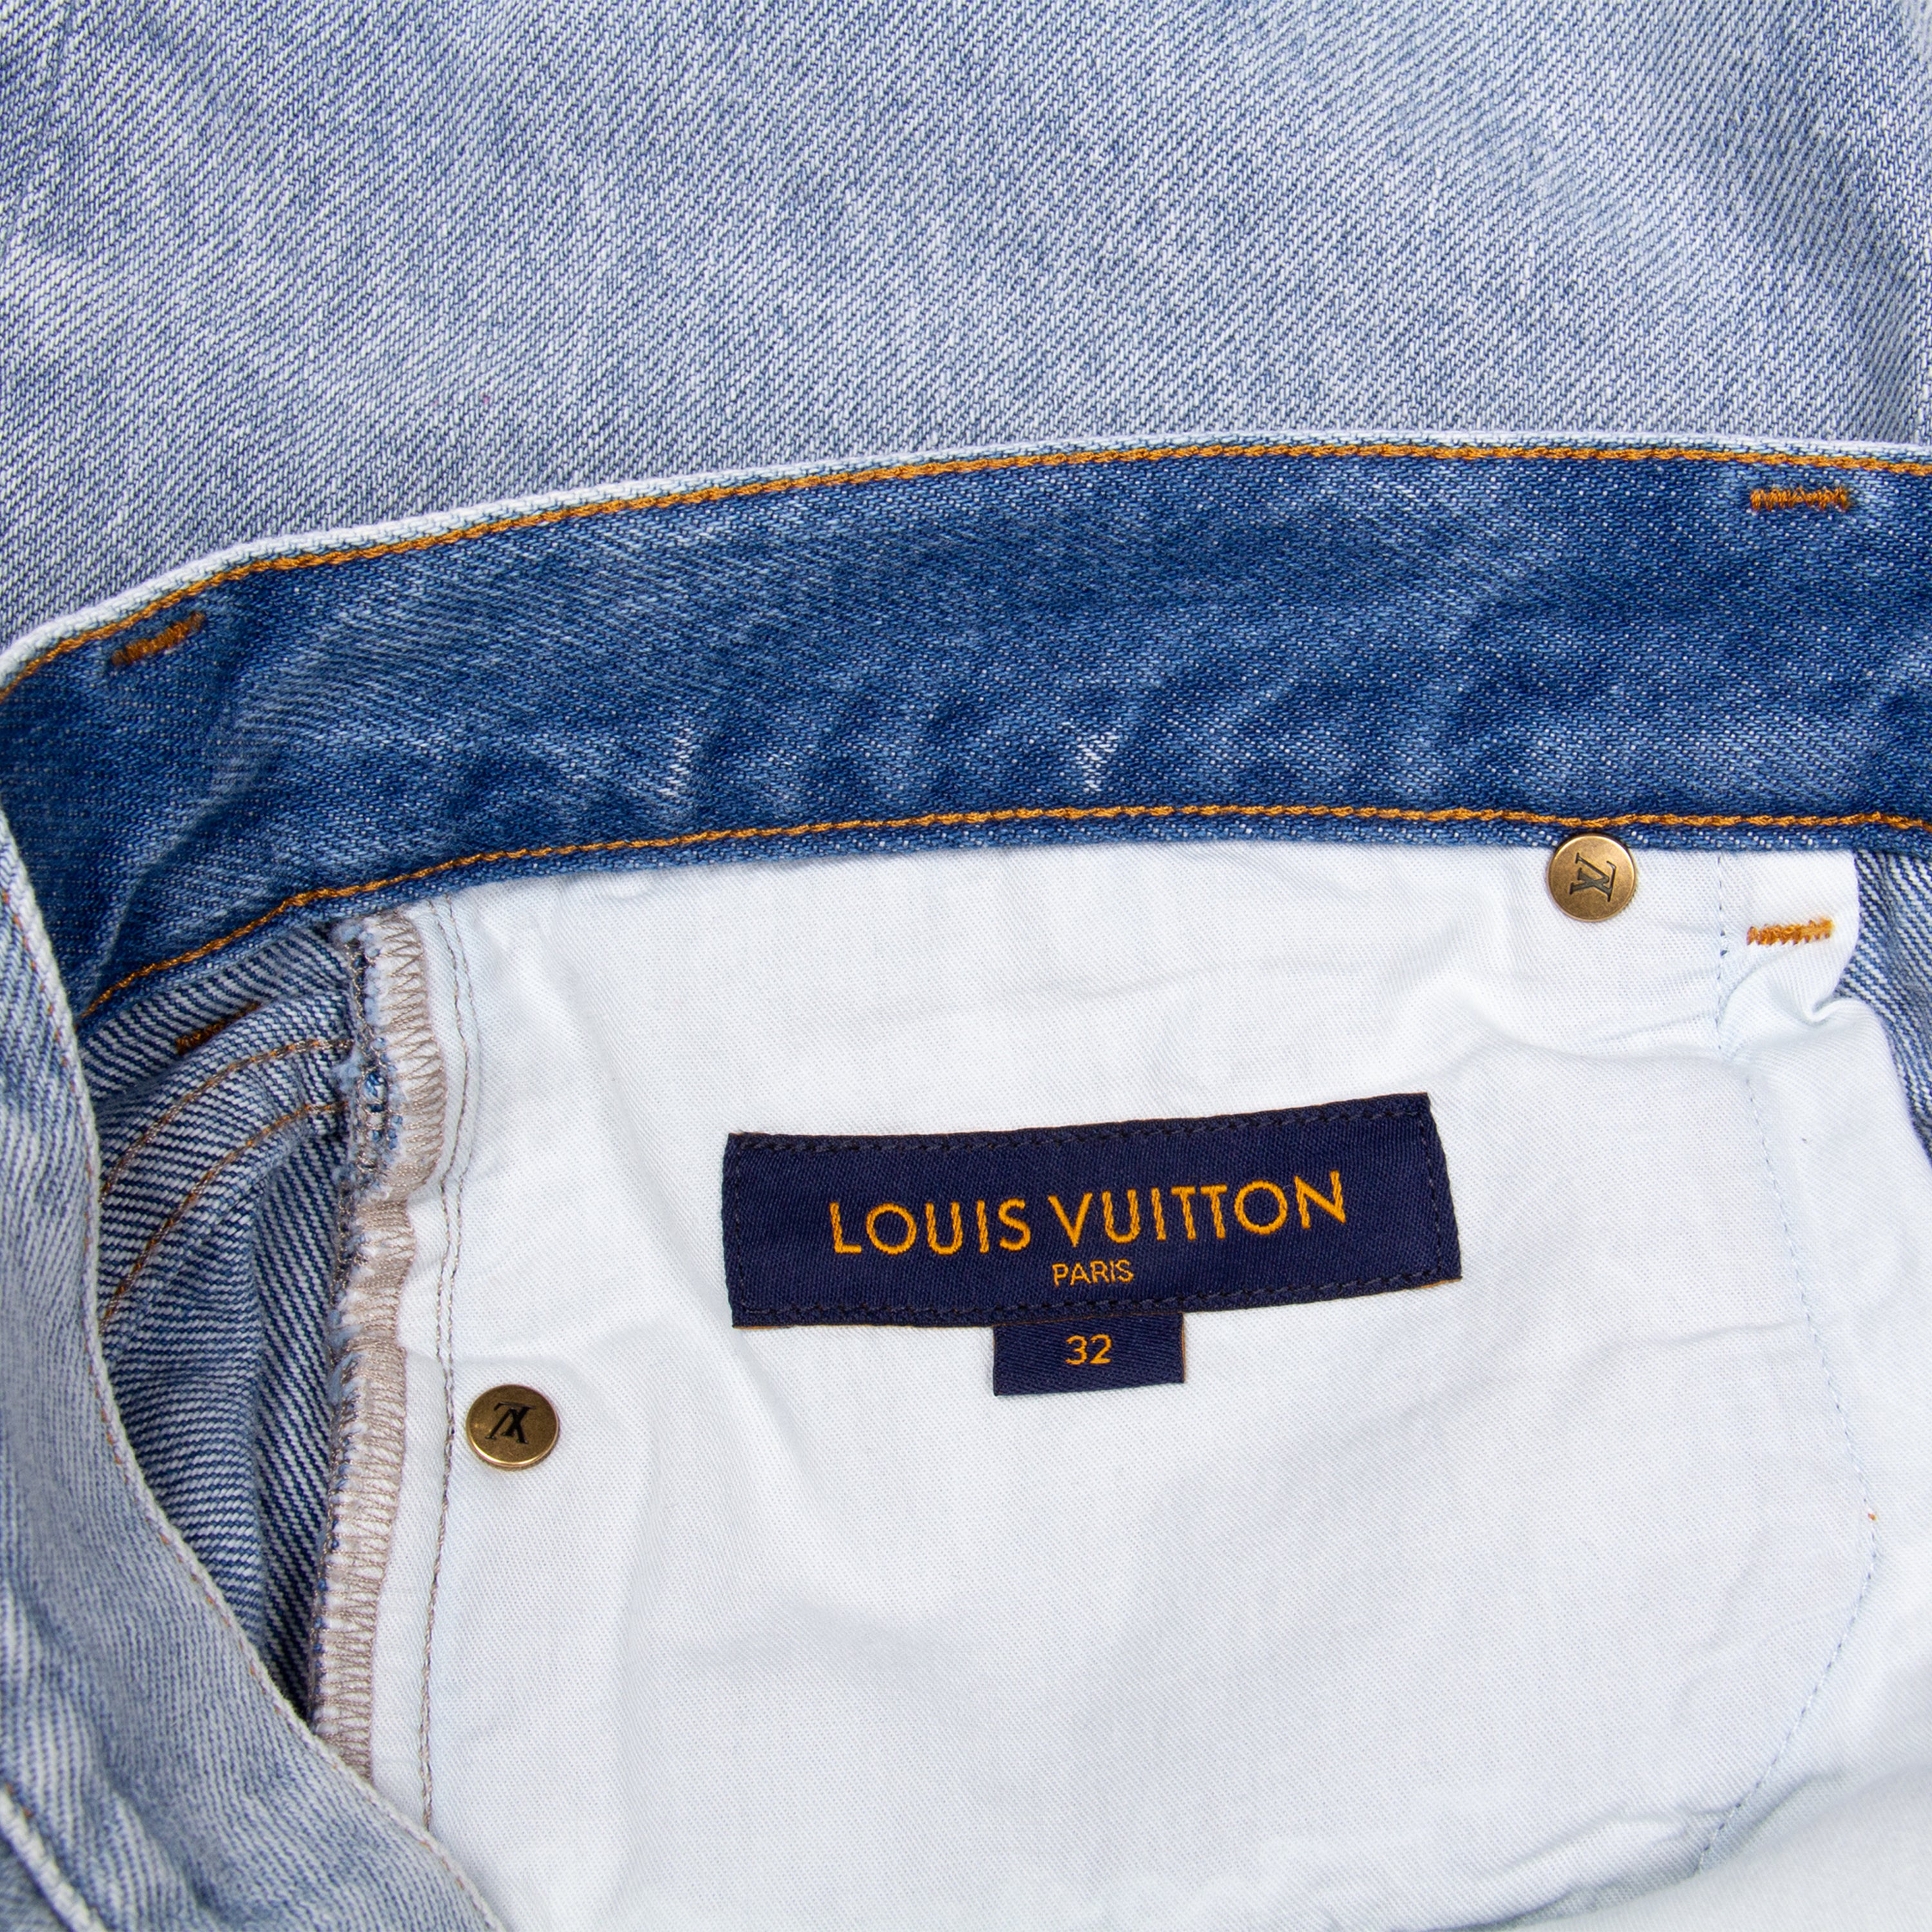 Louis Vuitton, Jeans, Louis Vuitton Mens Jeans 34 Waist